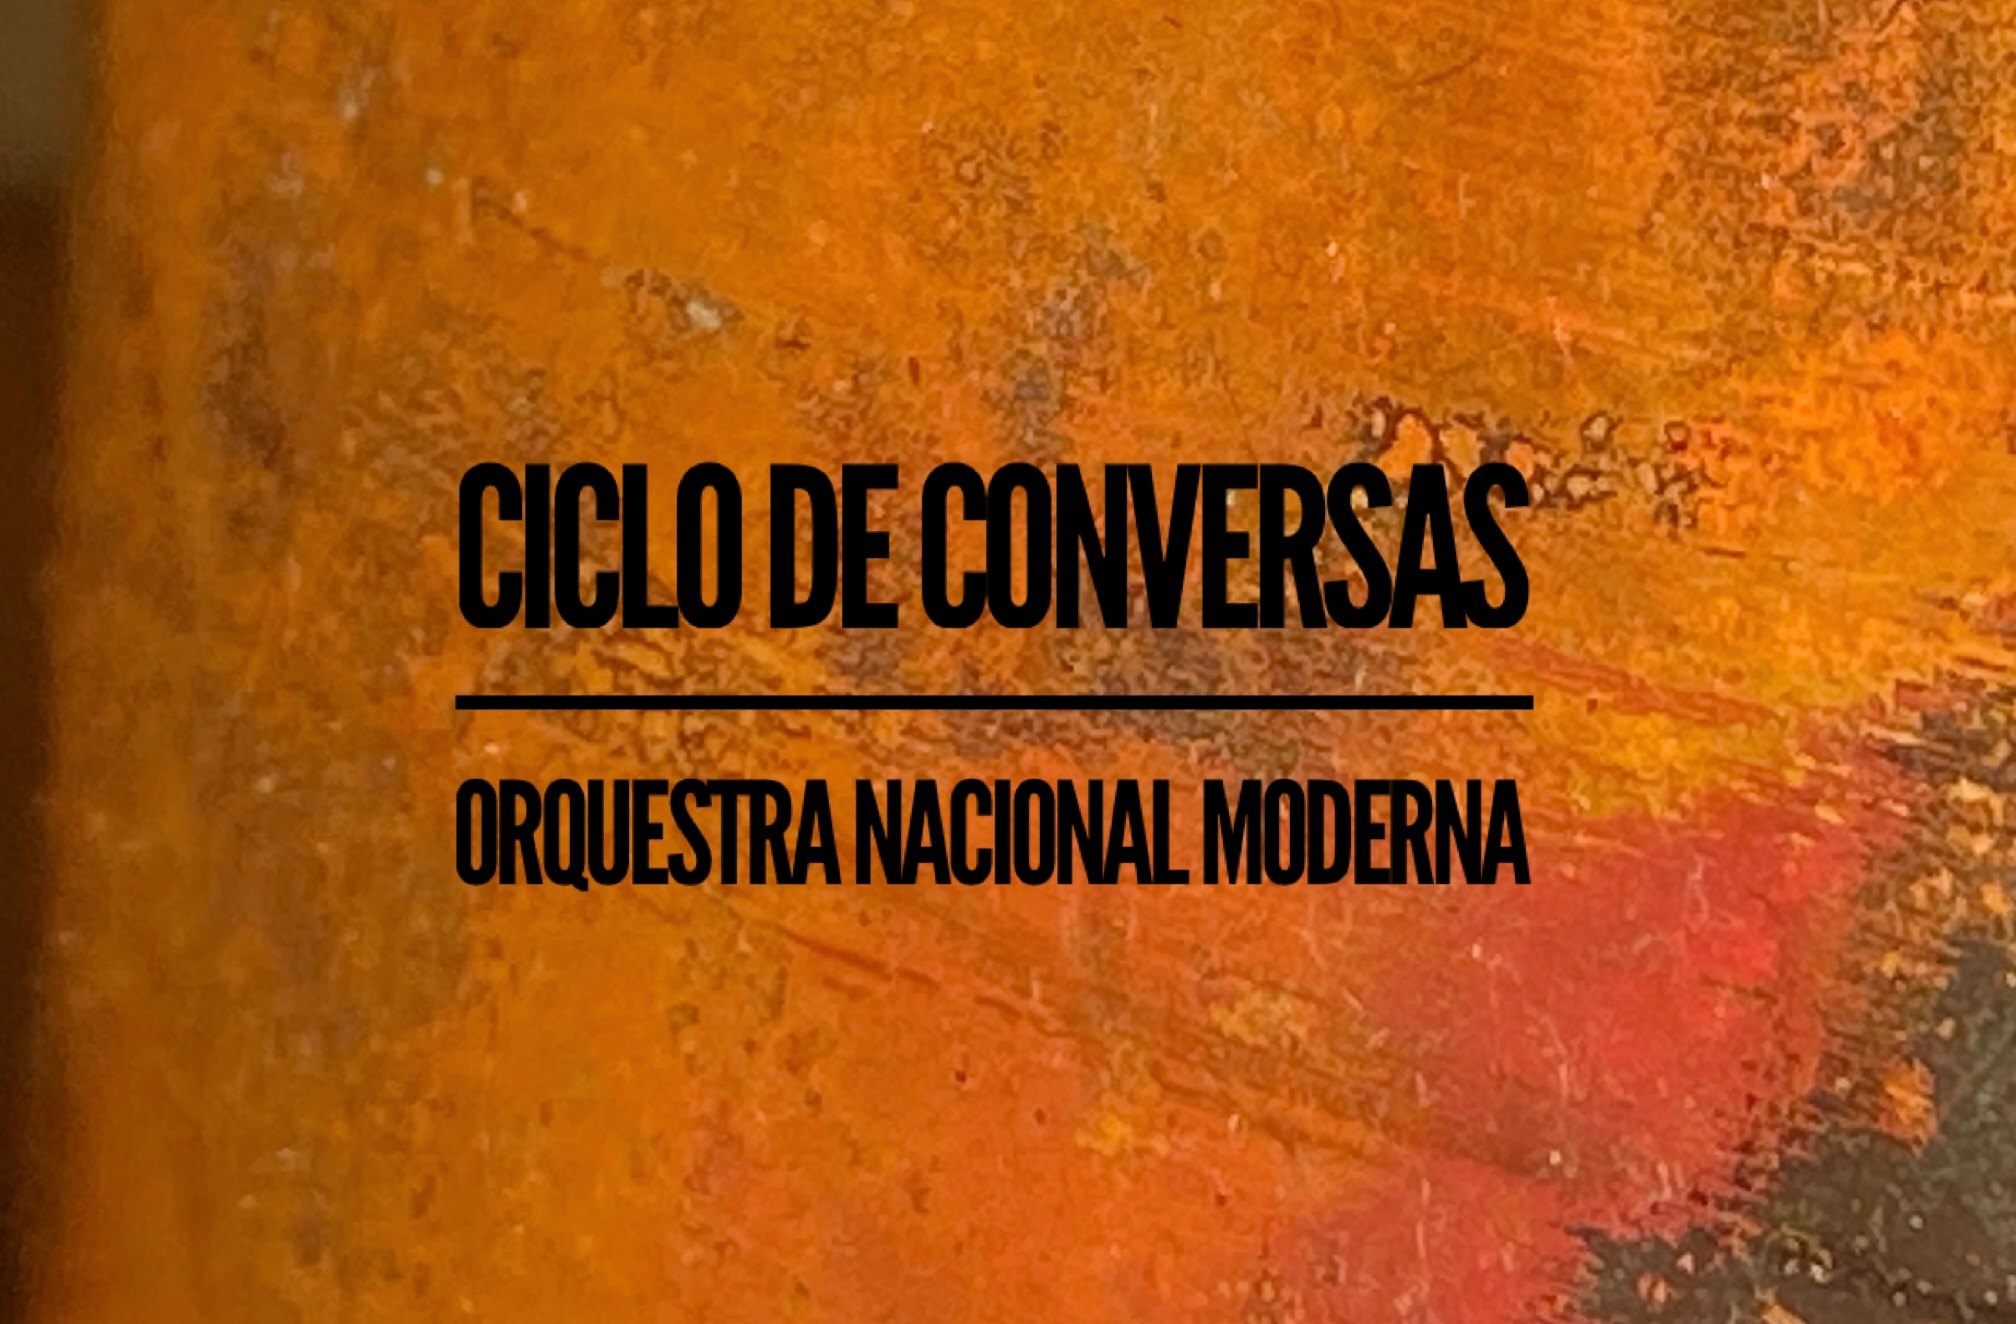 Ciclo de Conversas sobre Música Orquestral pela ONM _“Orquestras Comunitárias”